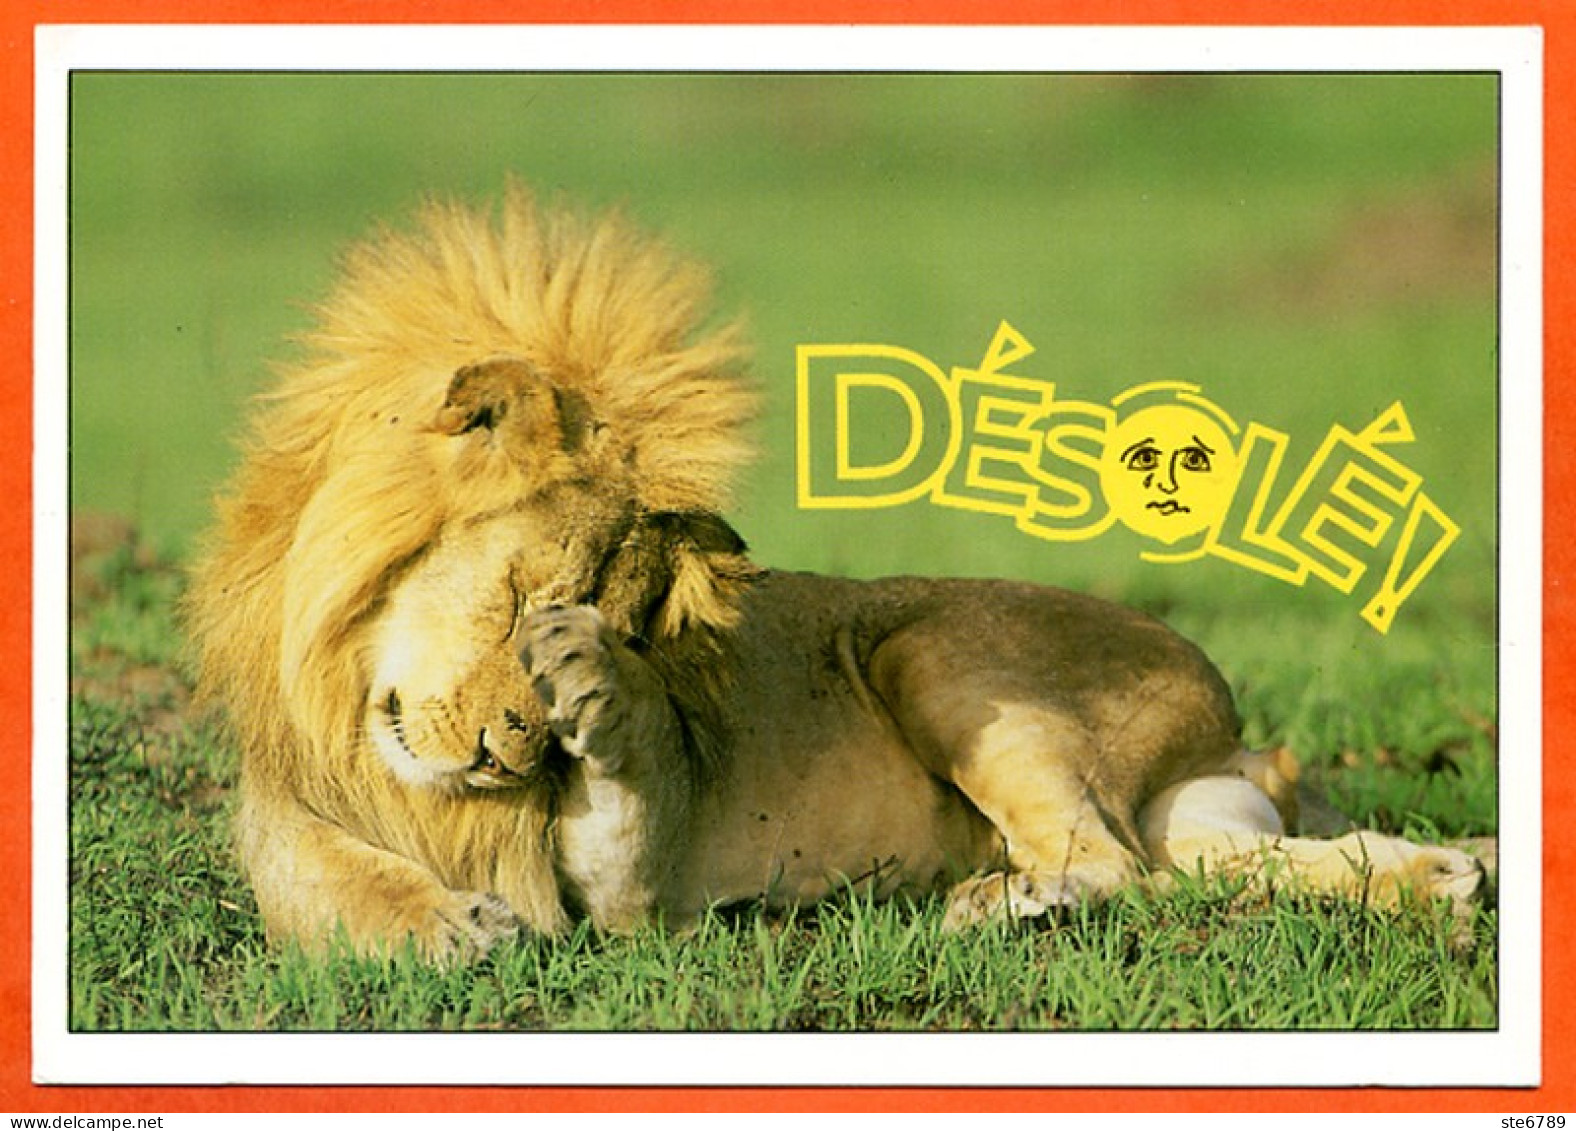 Animal Lion Humour FUNNYS Désolé ! Carte Vierge TBE - Lions